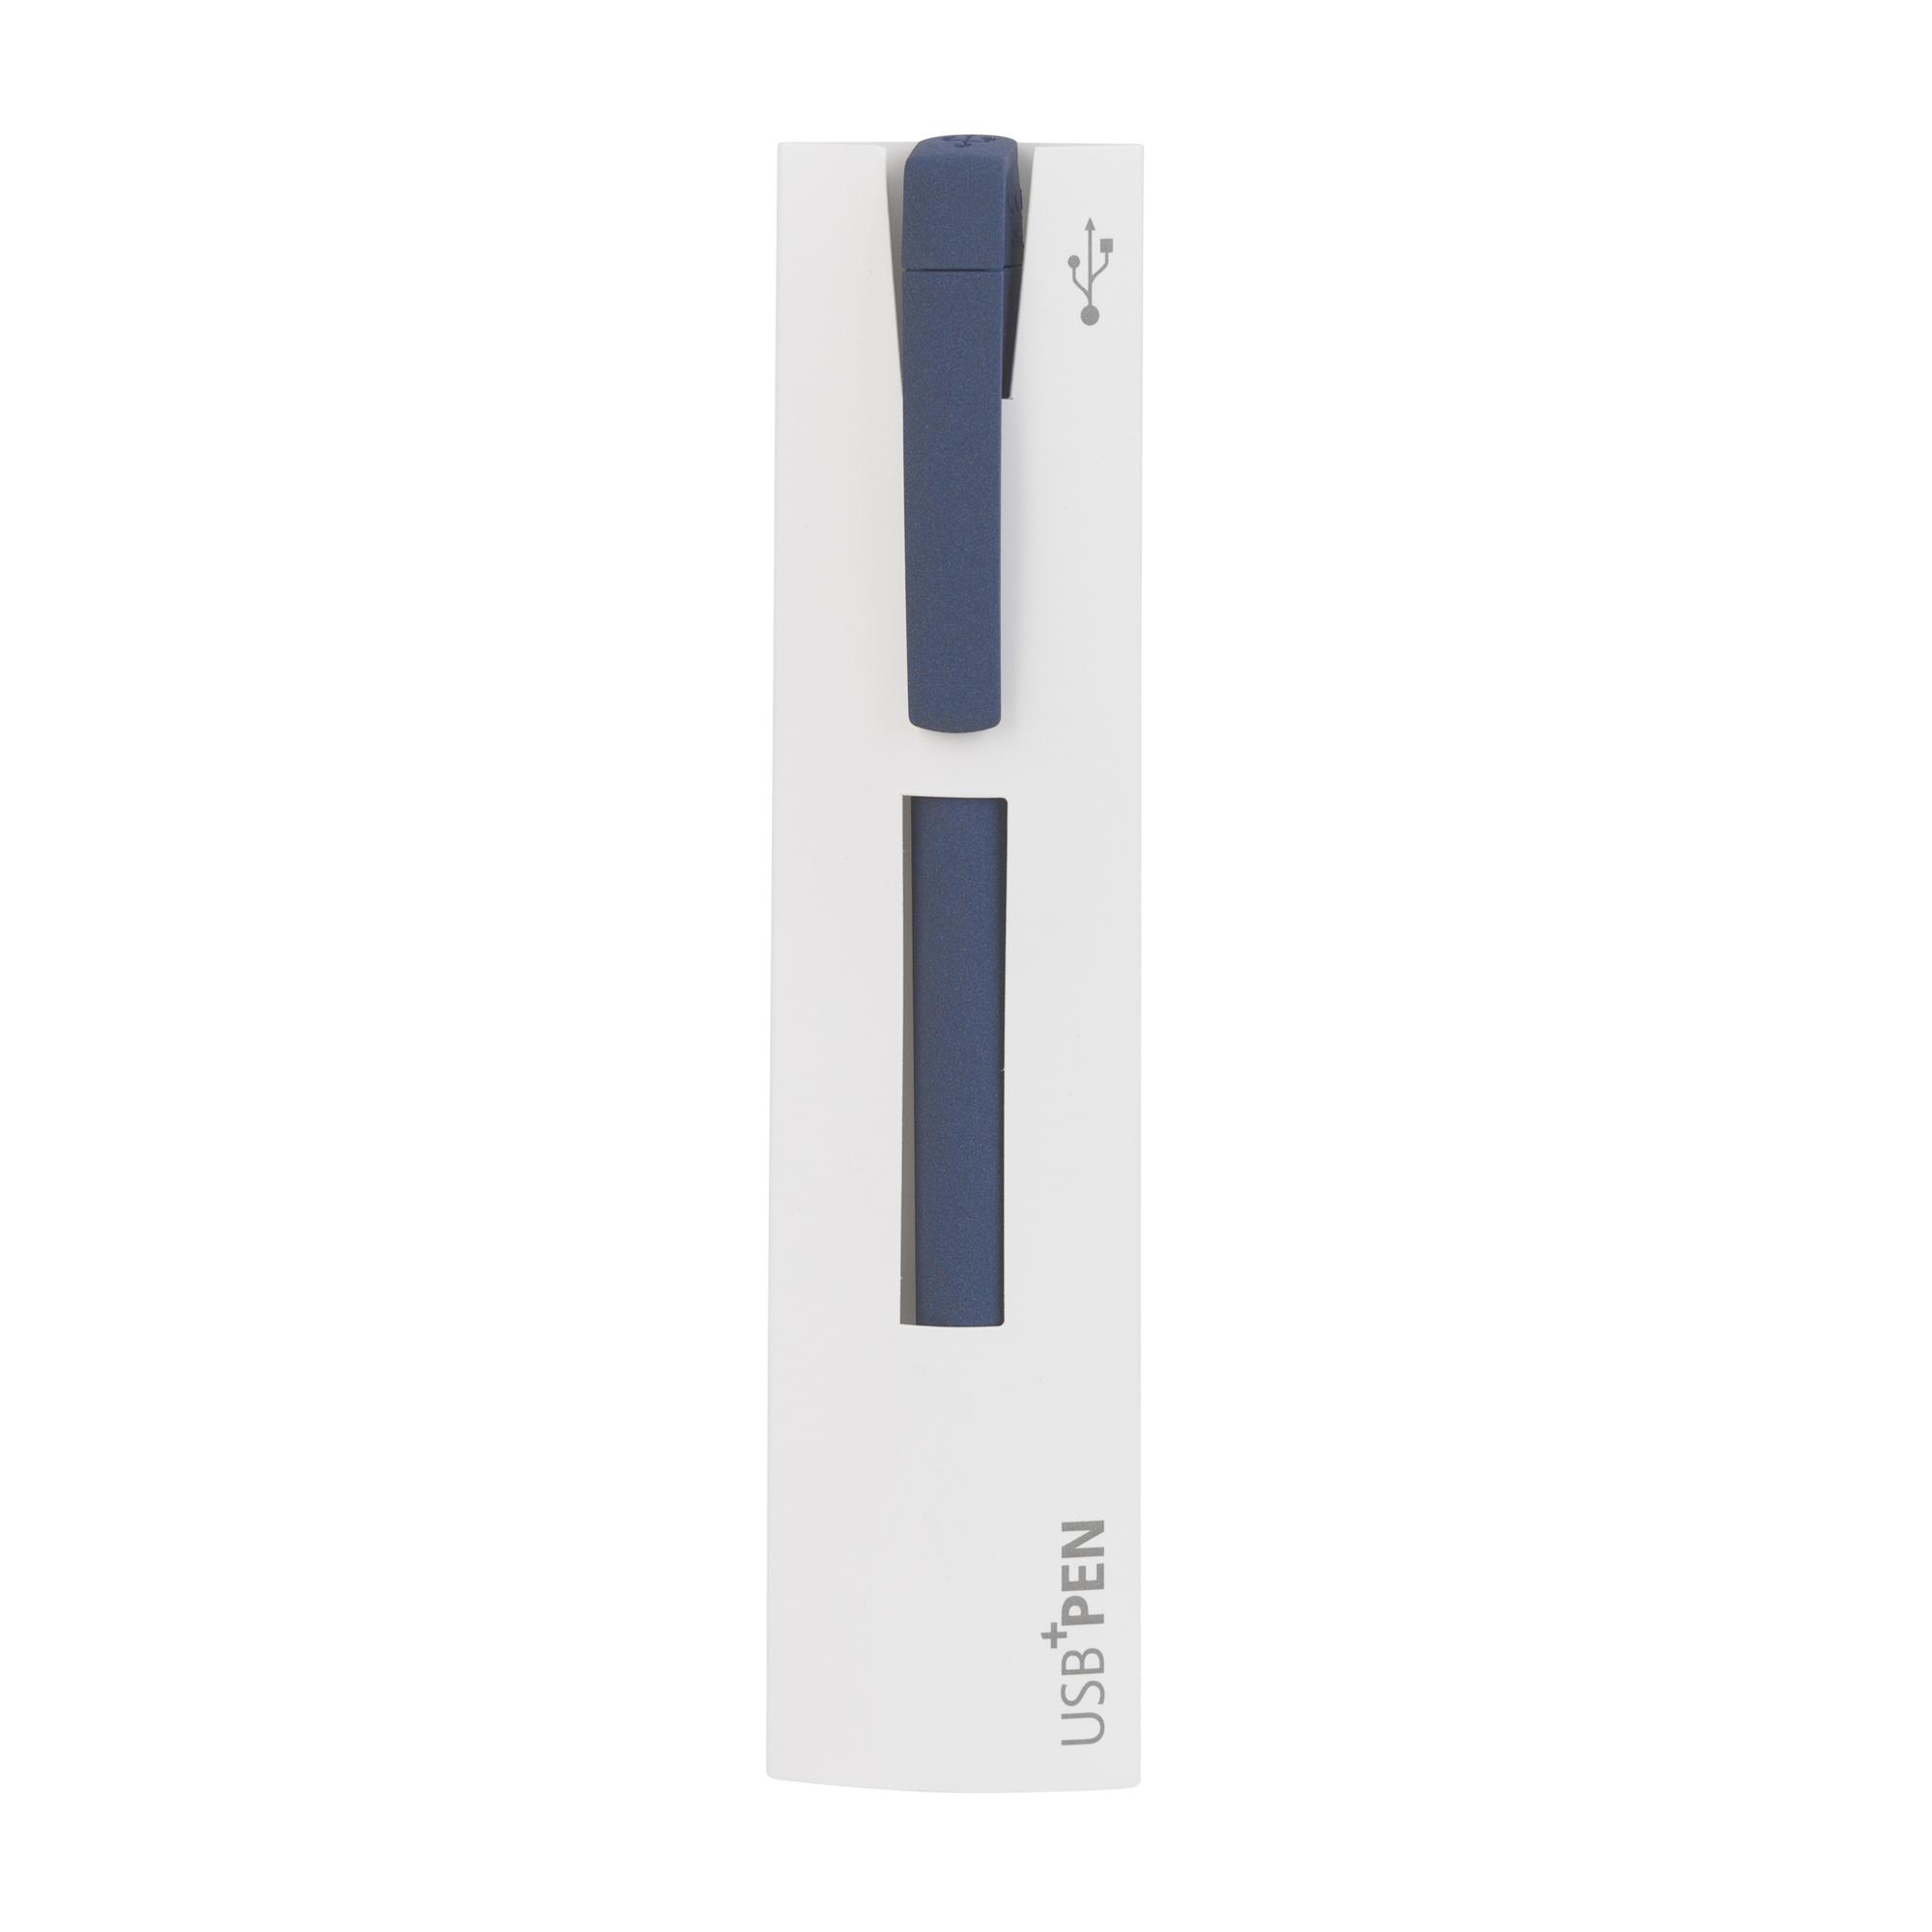 Ручка с флеш-картой USB 16GB «TURNUSsoftgrip M», цвет темно-синий, фото 4